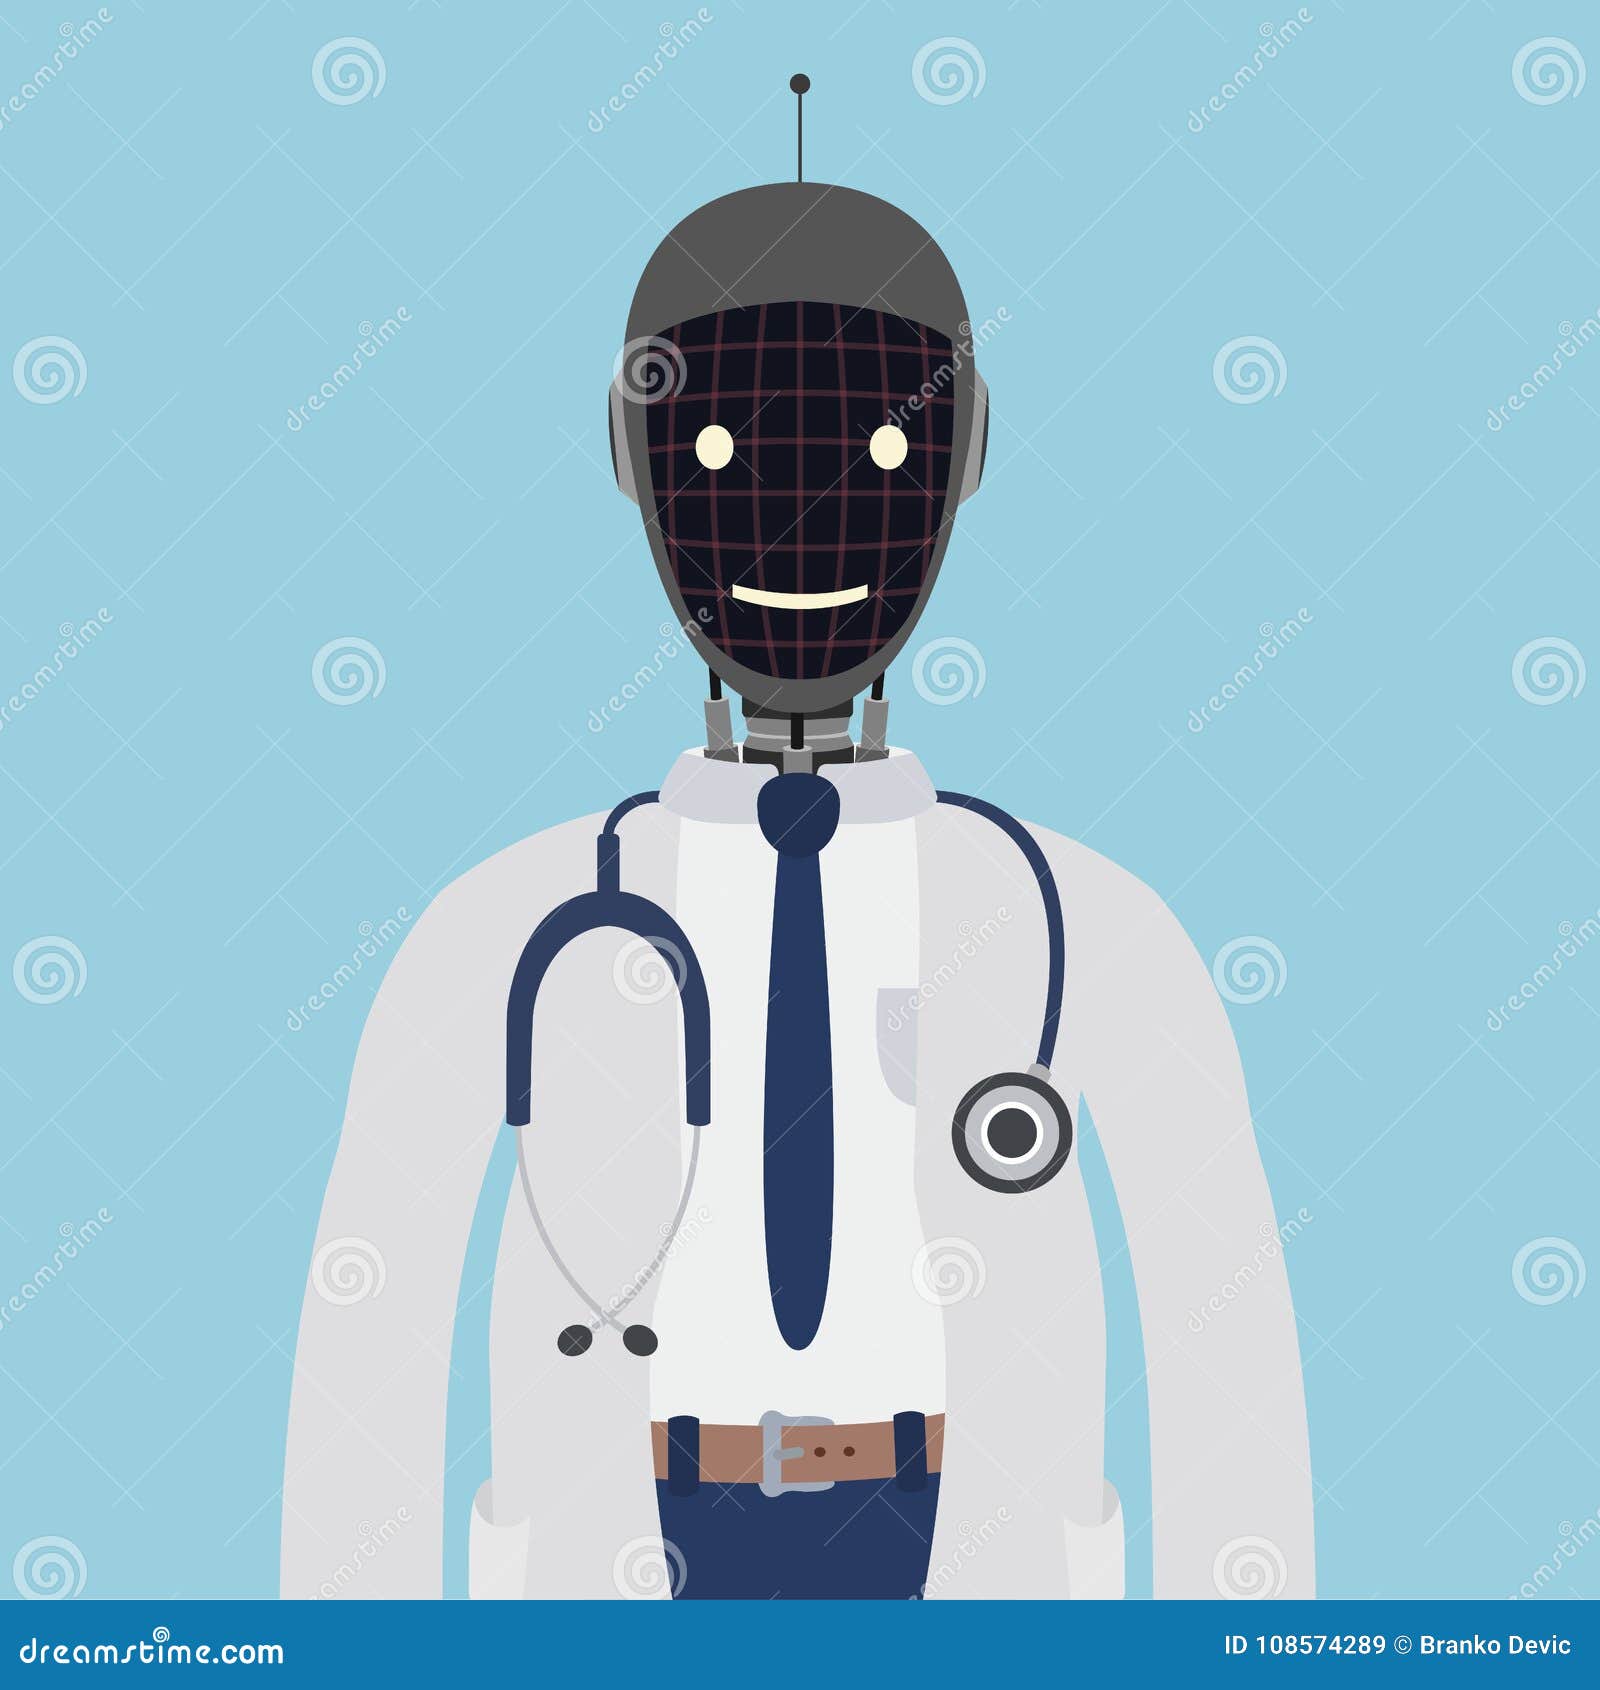 Врач есть врач будущего. Робот врач. Робот медик. Рисунок медицина будущего. Робот медик нарисованный.